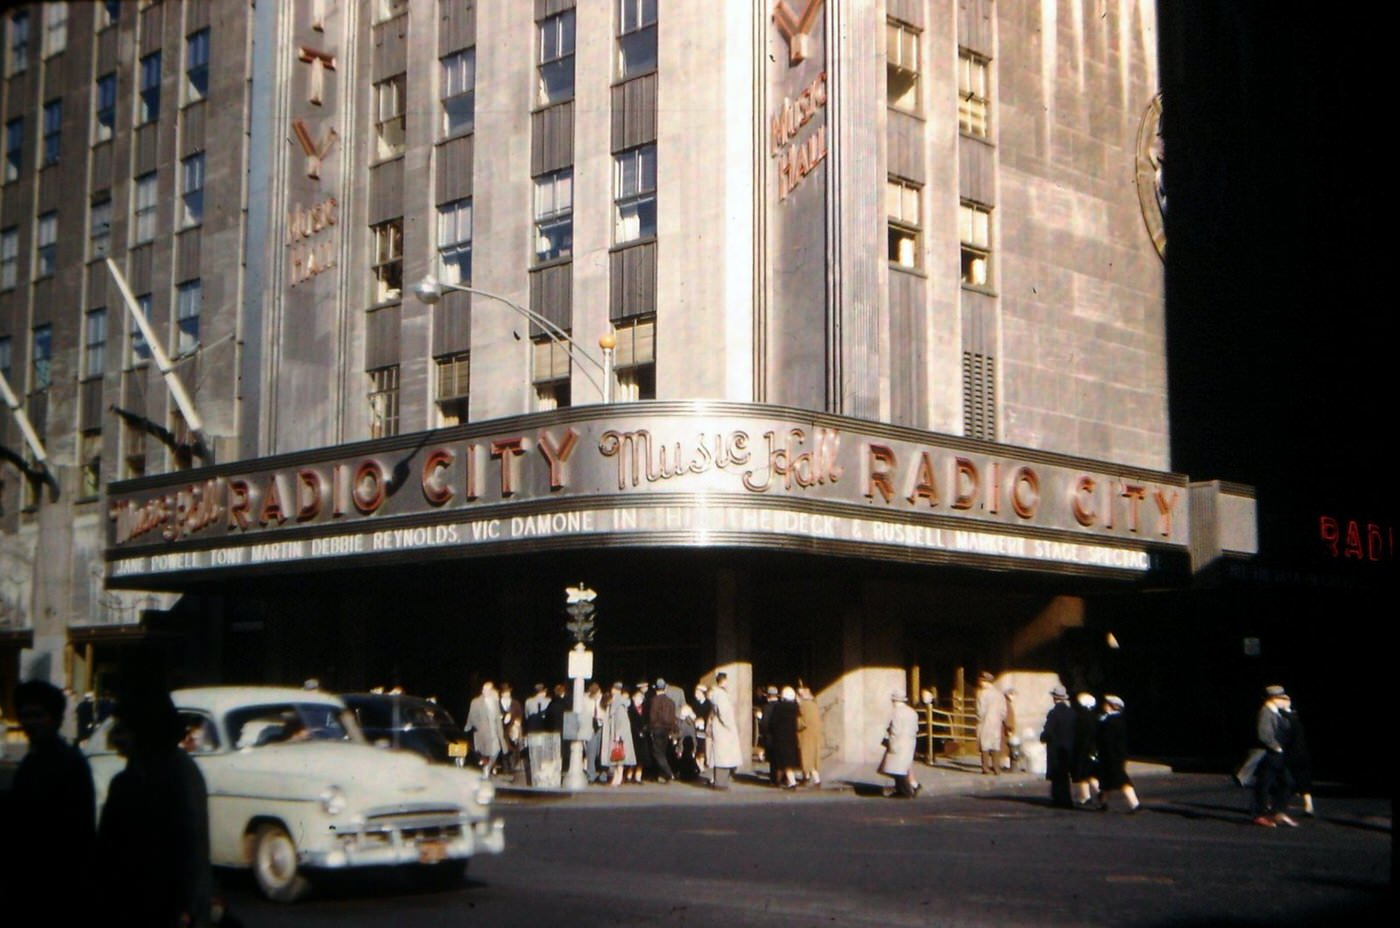 Radio city music hall, 1955